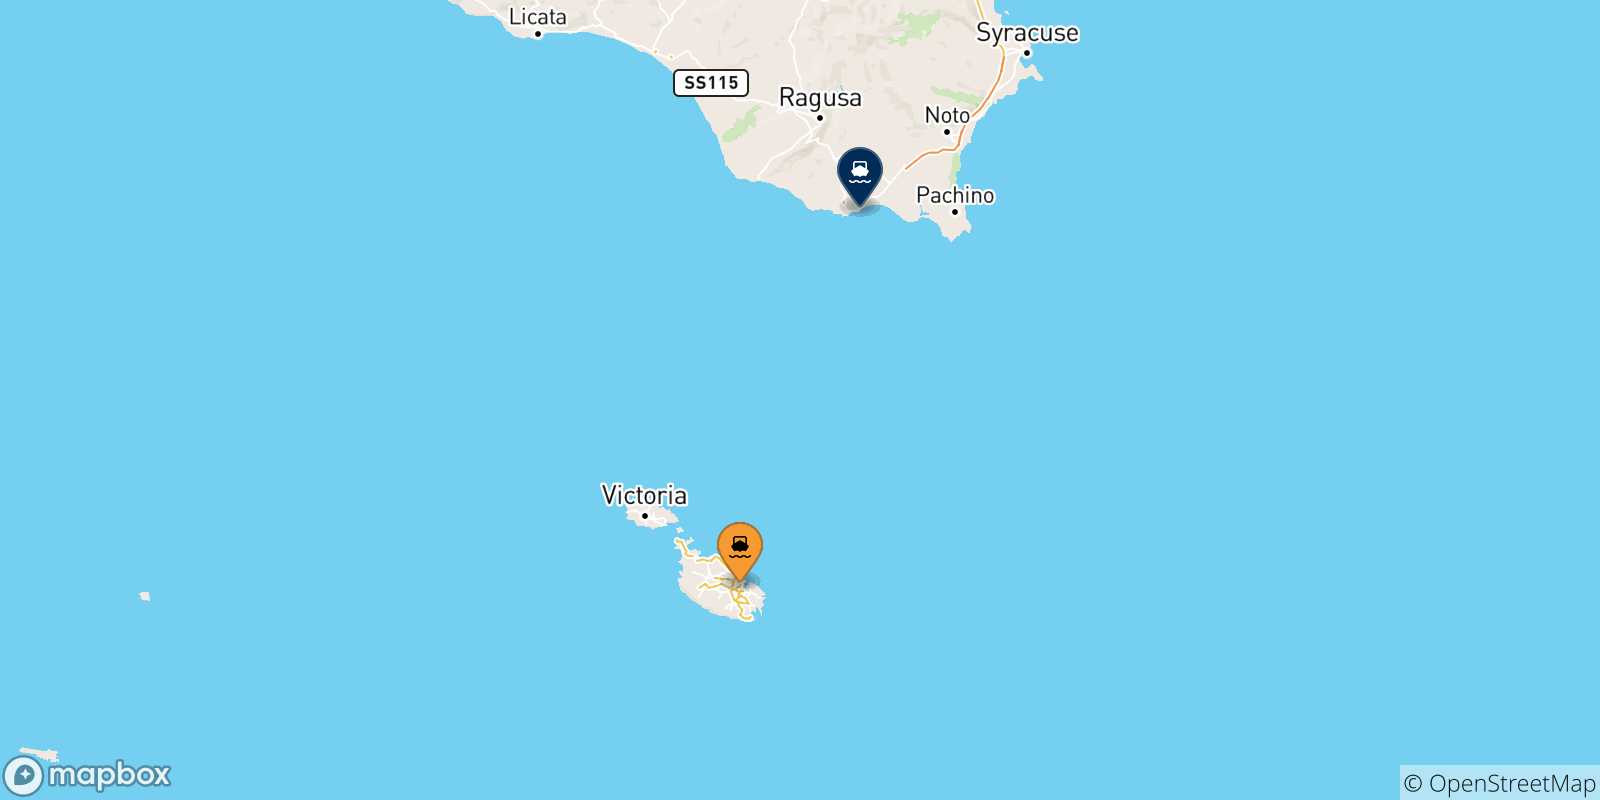 Mappa delle possibili rotte tra Malta e Pozzallo